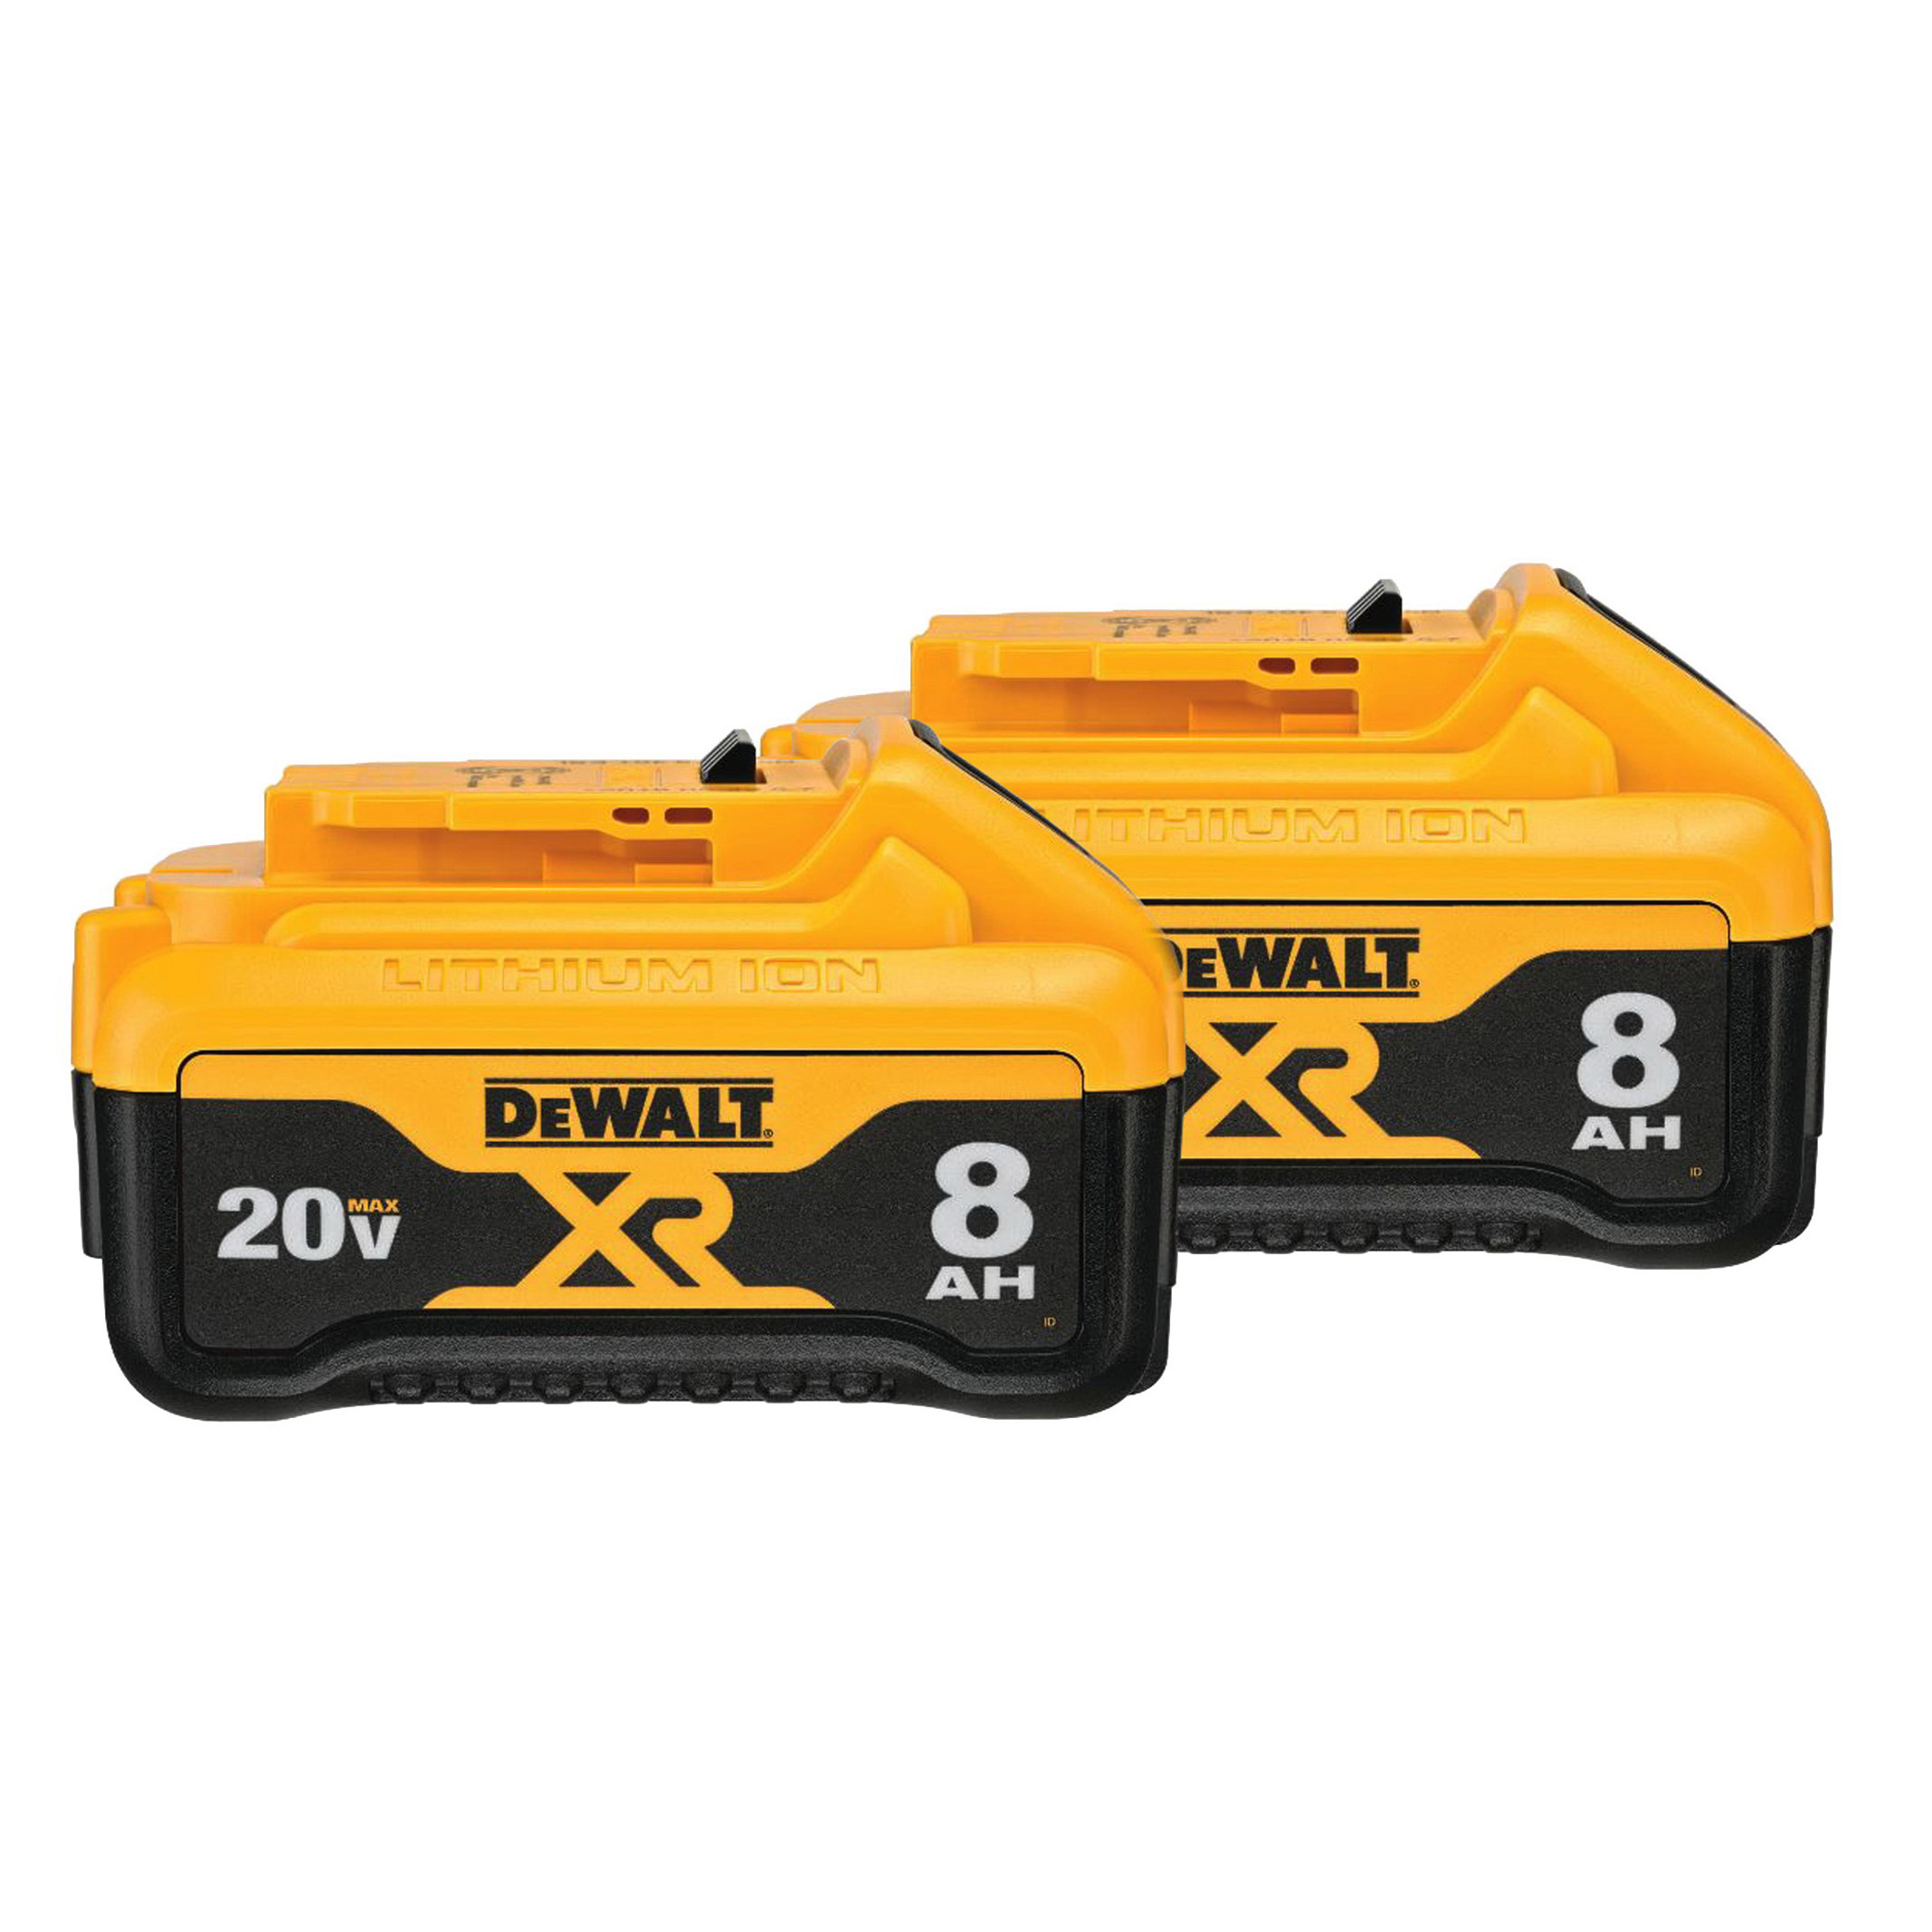 DeWALT DCB208-2 Battery, 20 V Battery, 8 Ah, Includes: (2) DCB208 20 V MAX Lithium-Ion Batteries